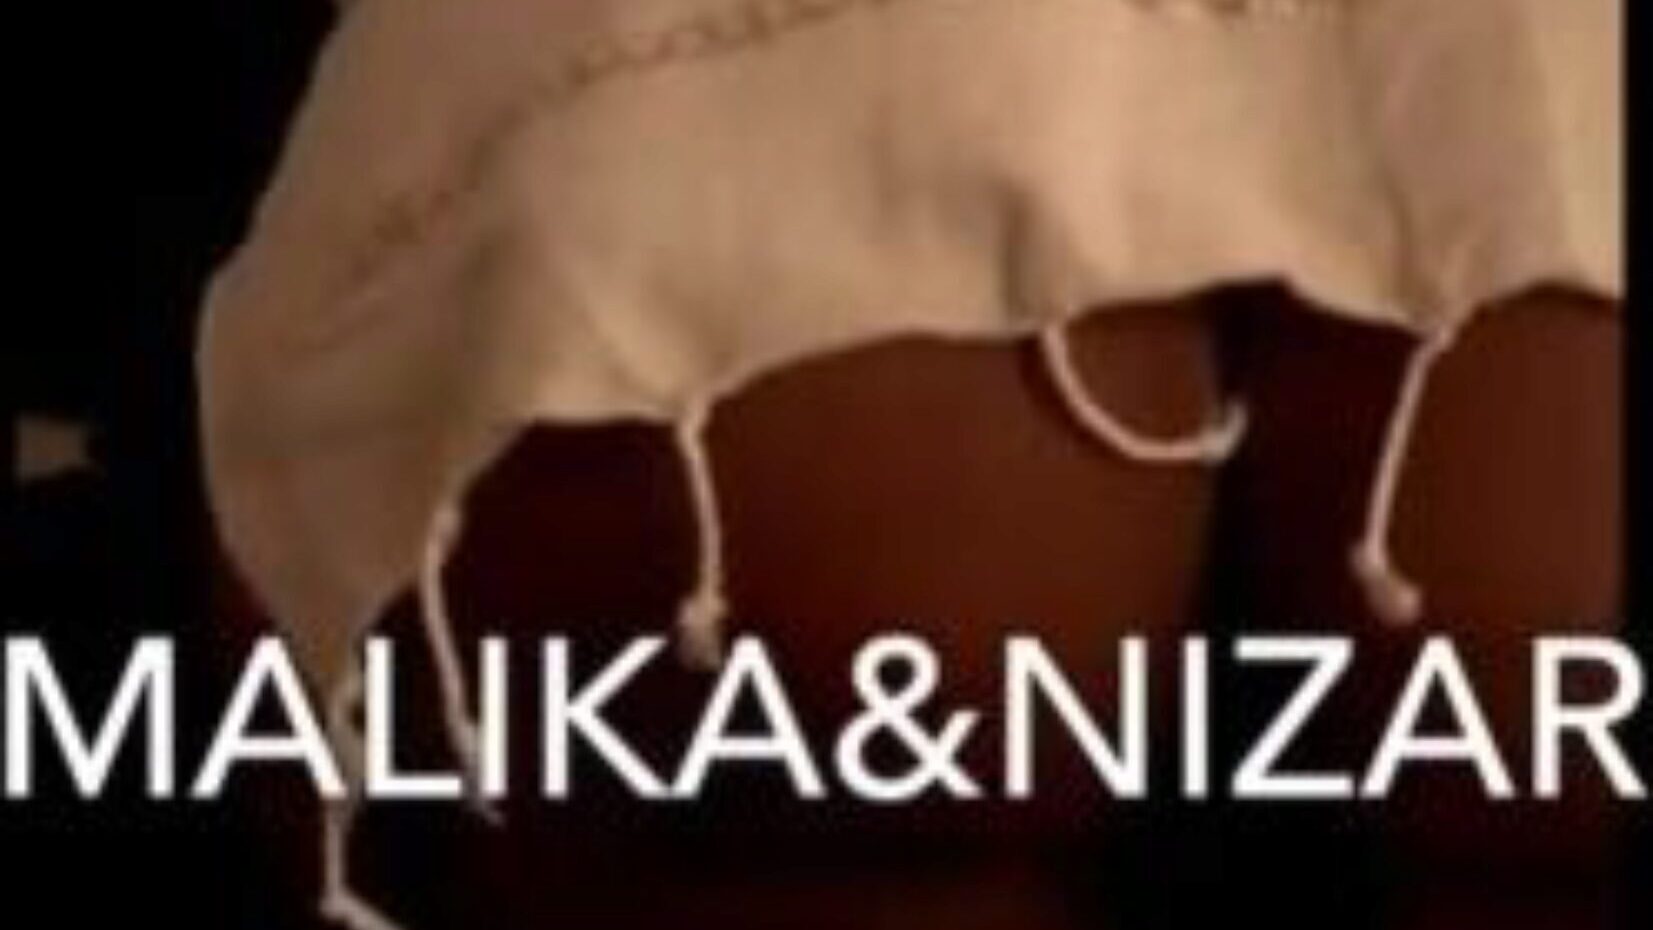 Malika & Nizar: бесплатные сексуальный хардкор порно видео d3 - xhamster смотреть Малик и эпизод оргии Nizar трубки общедоступного на xhamster для, с авторитетной стайкой тунисских и сексуальных АРАБСКИХ хардкор порнографией видеосцен